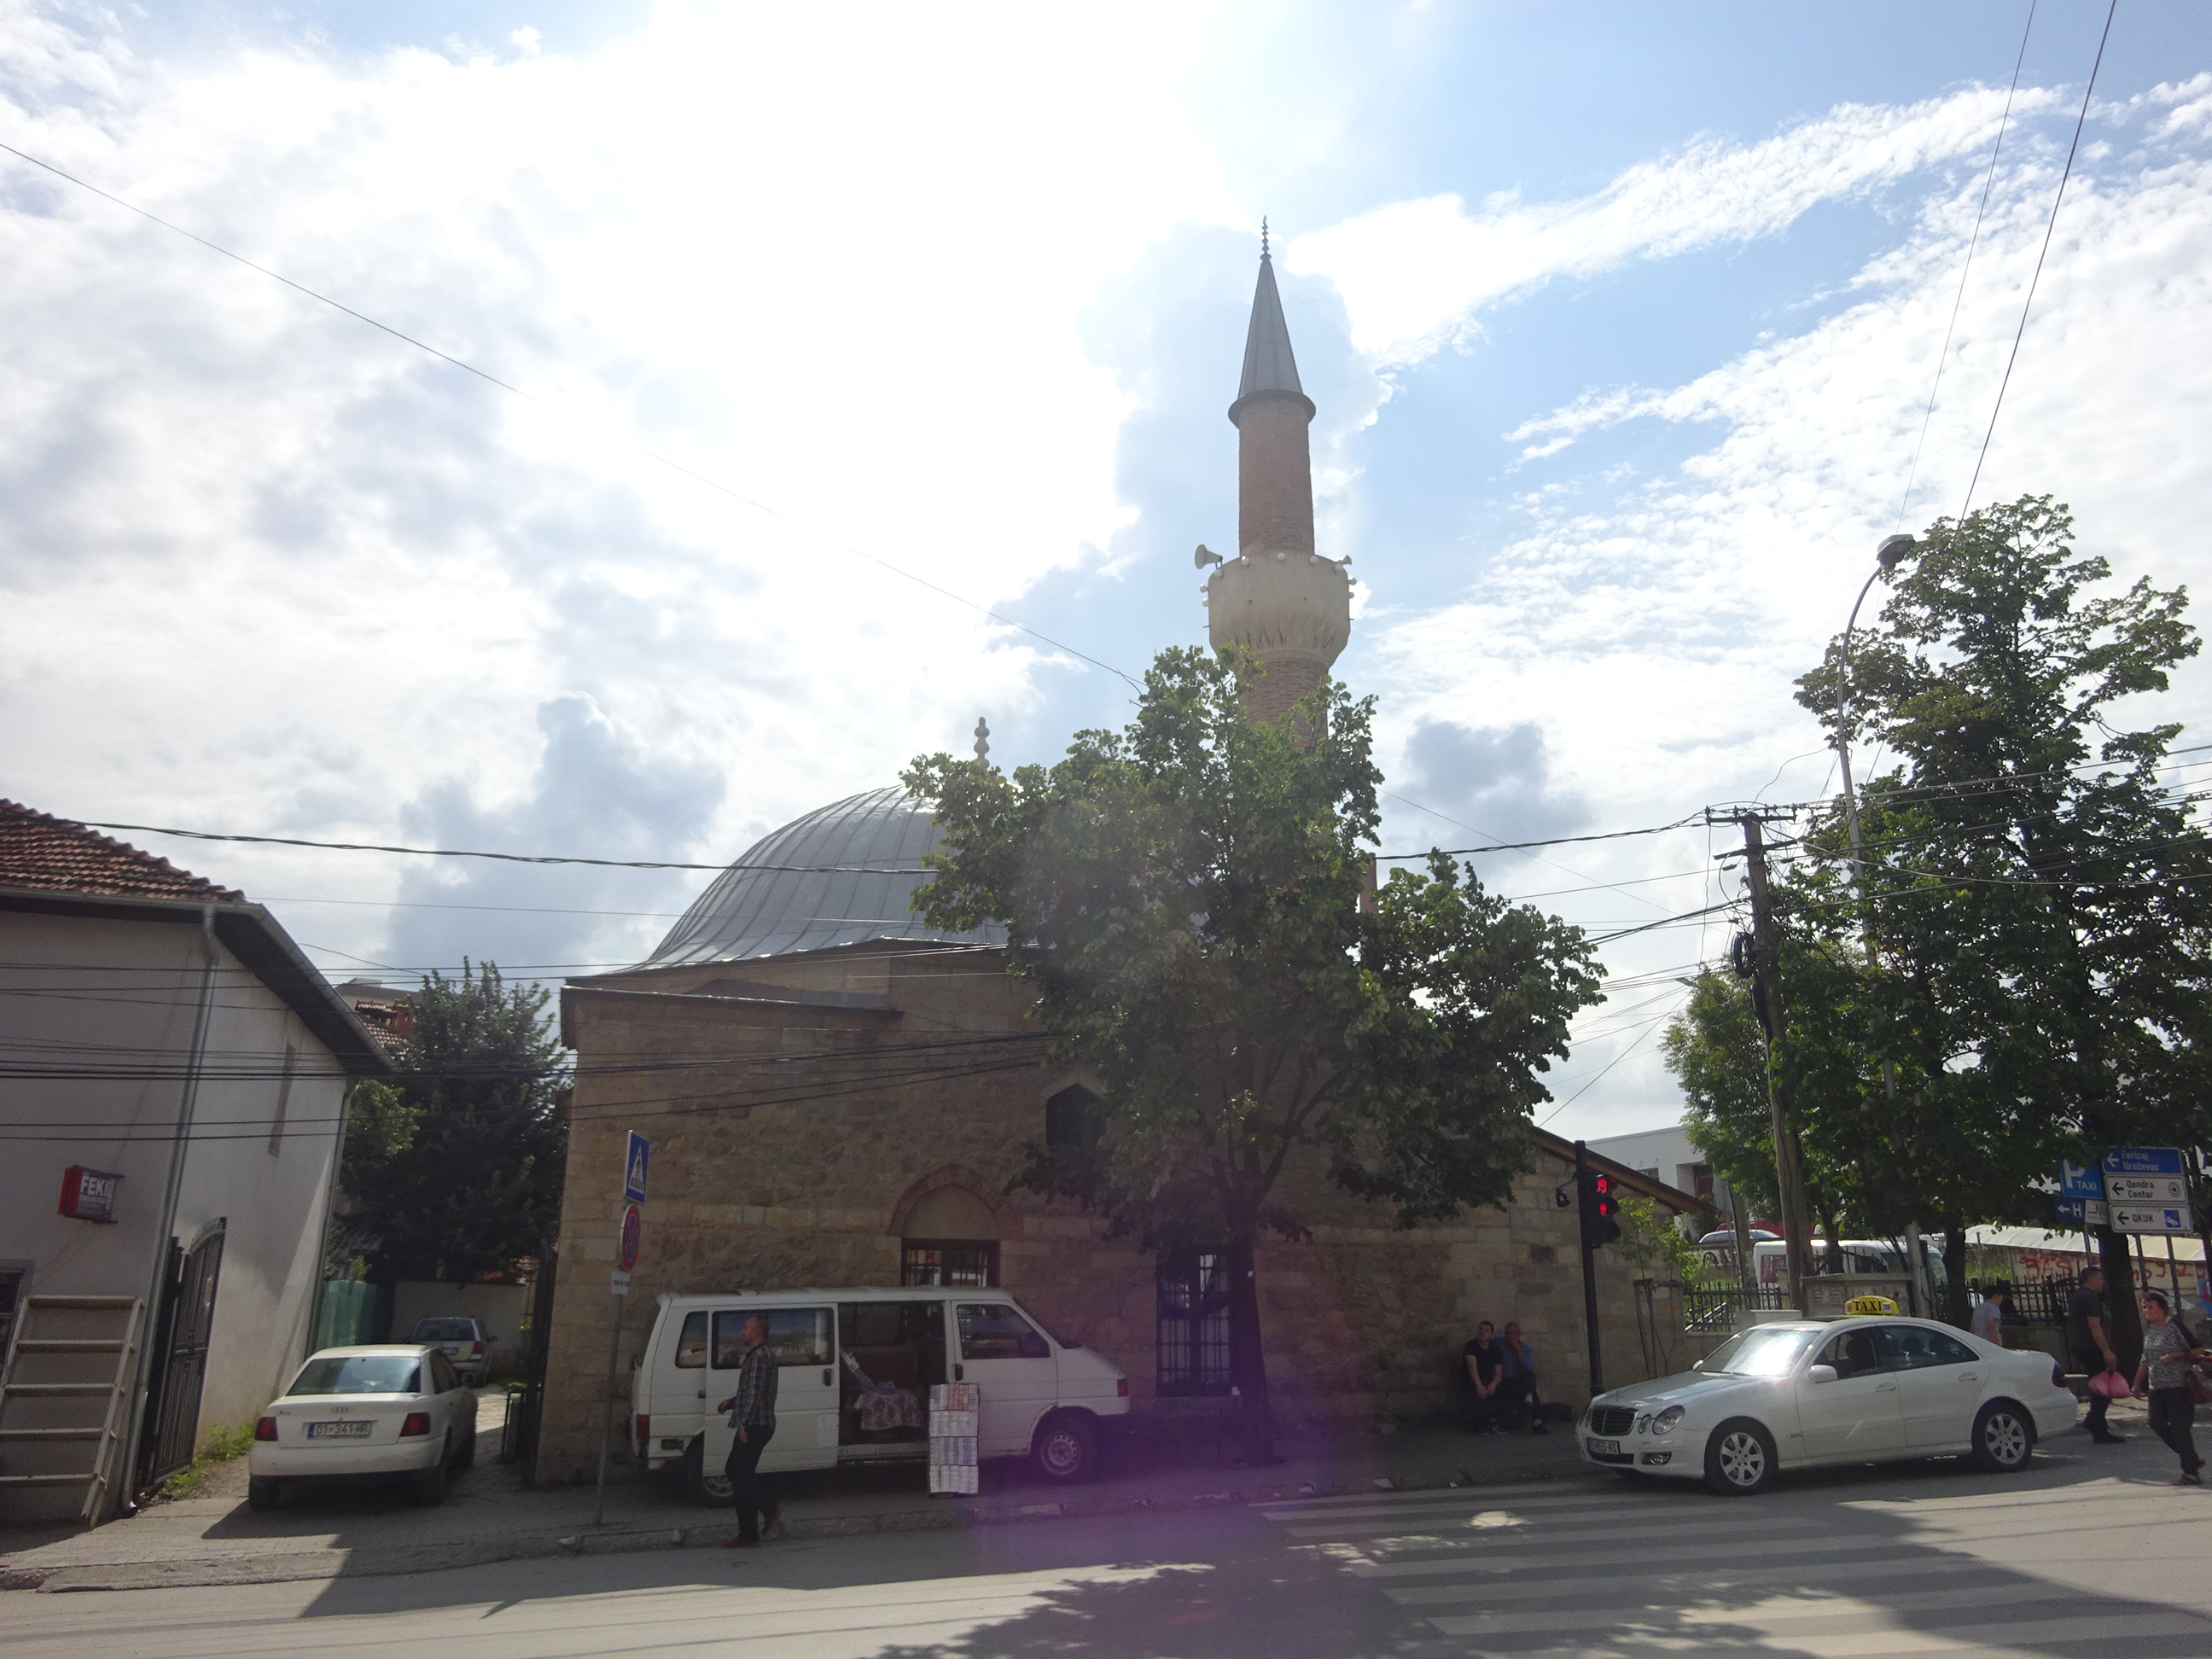 コソボの首都プリシュティナの観光スポット「モスク」